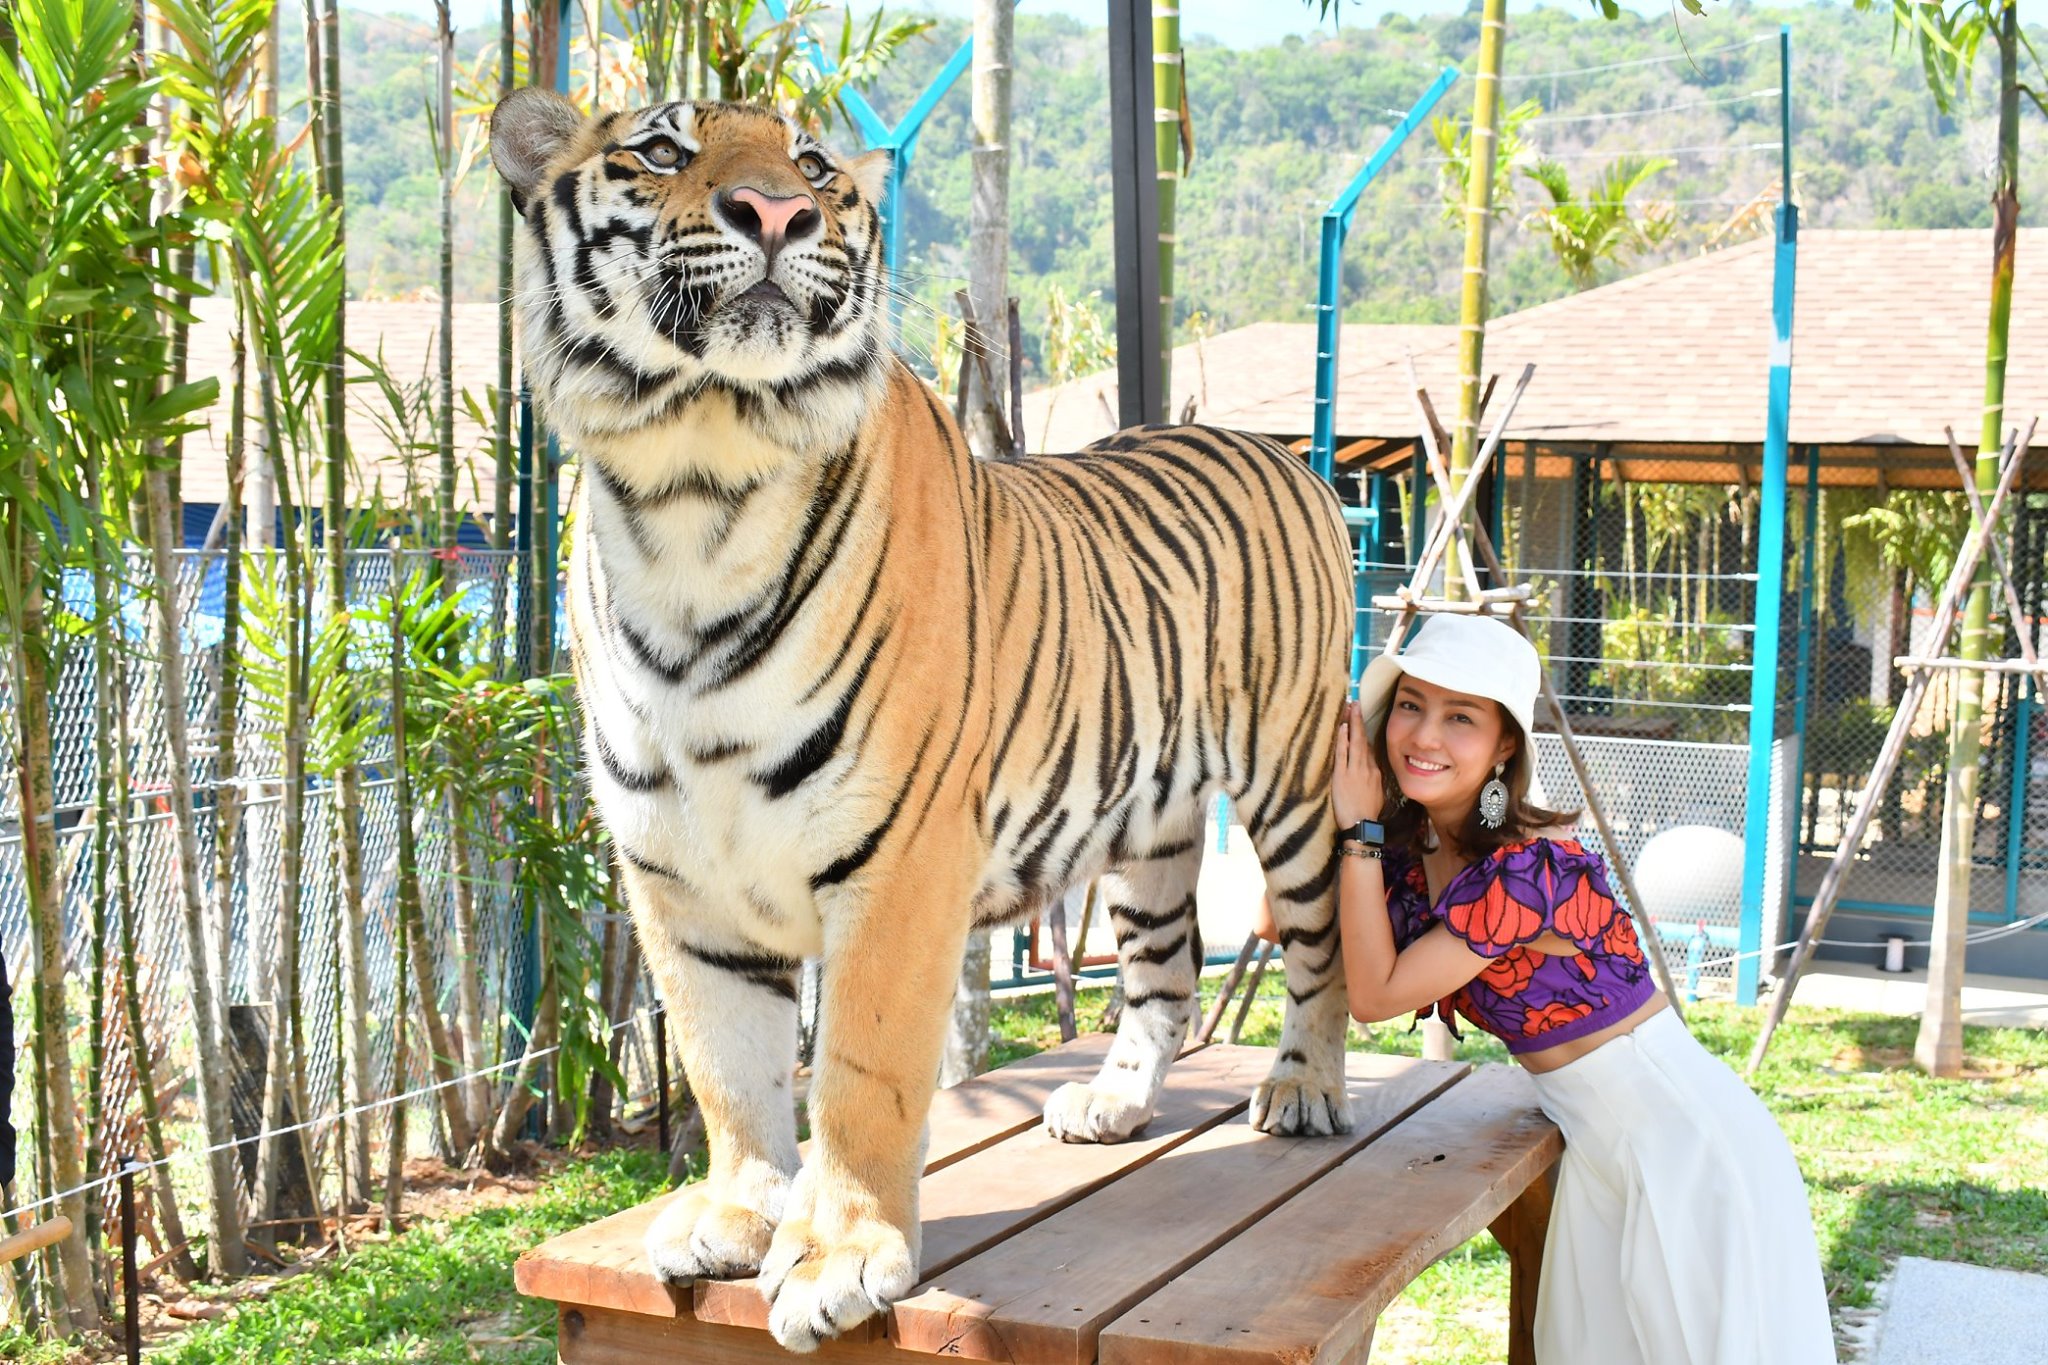 Phuket Tiger park